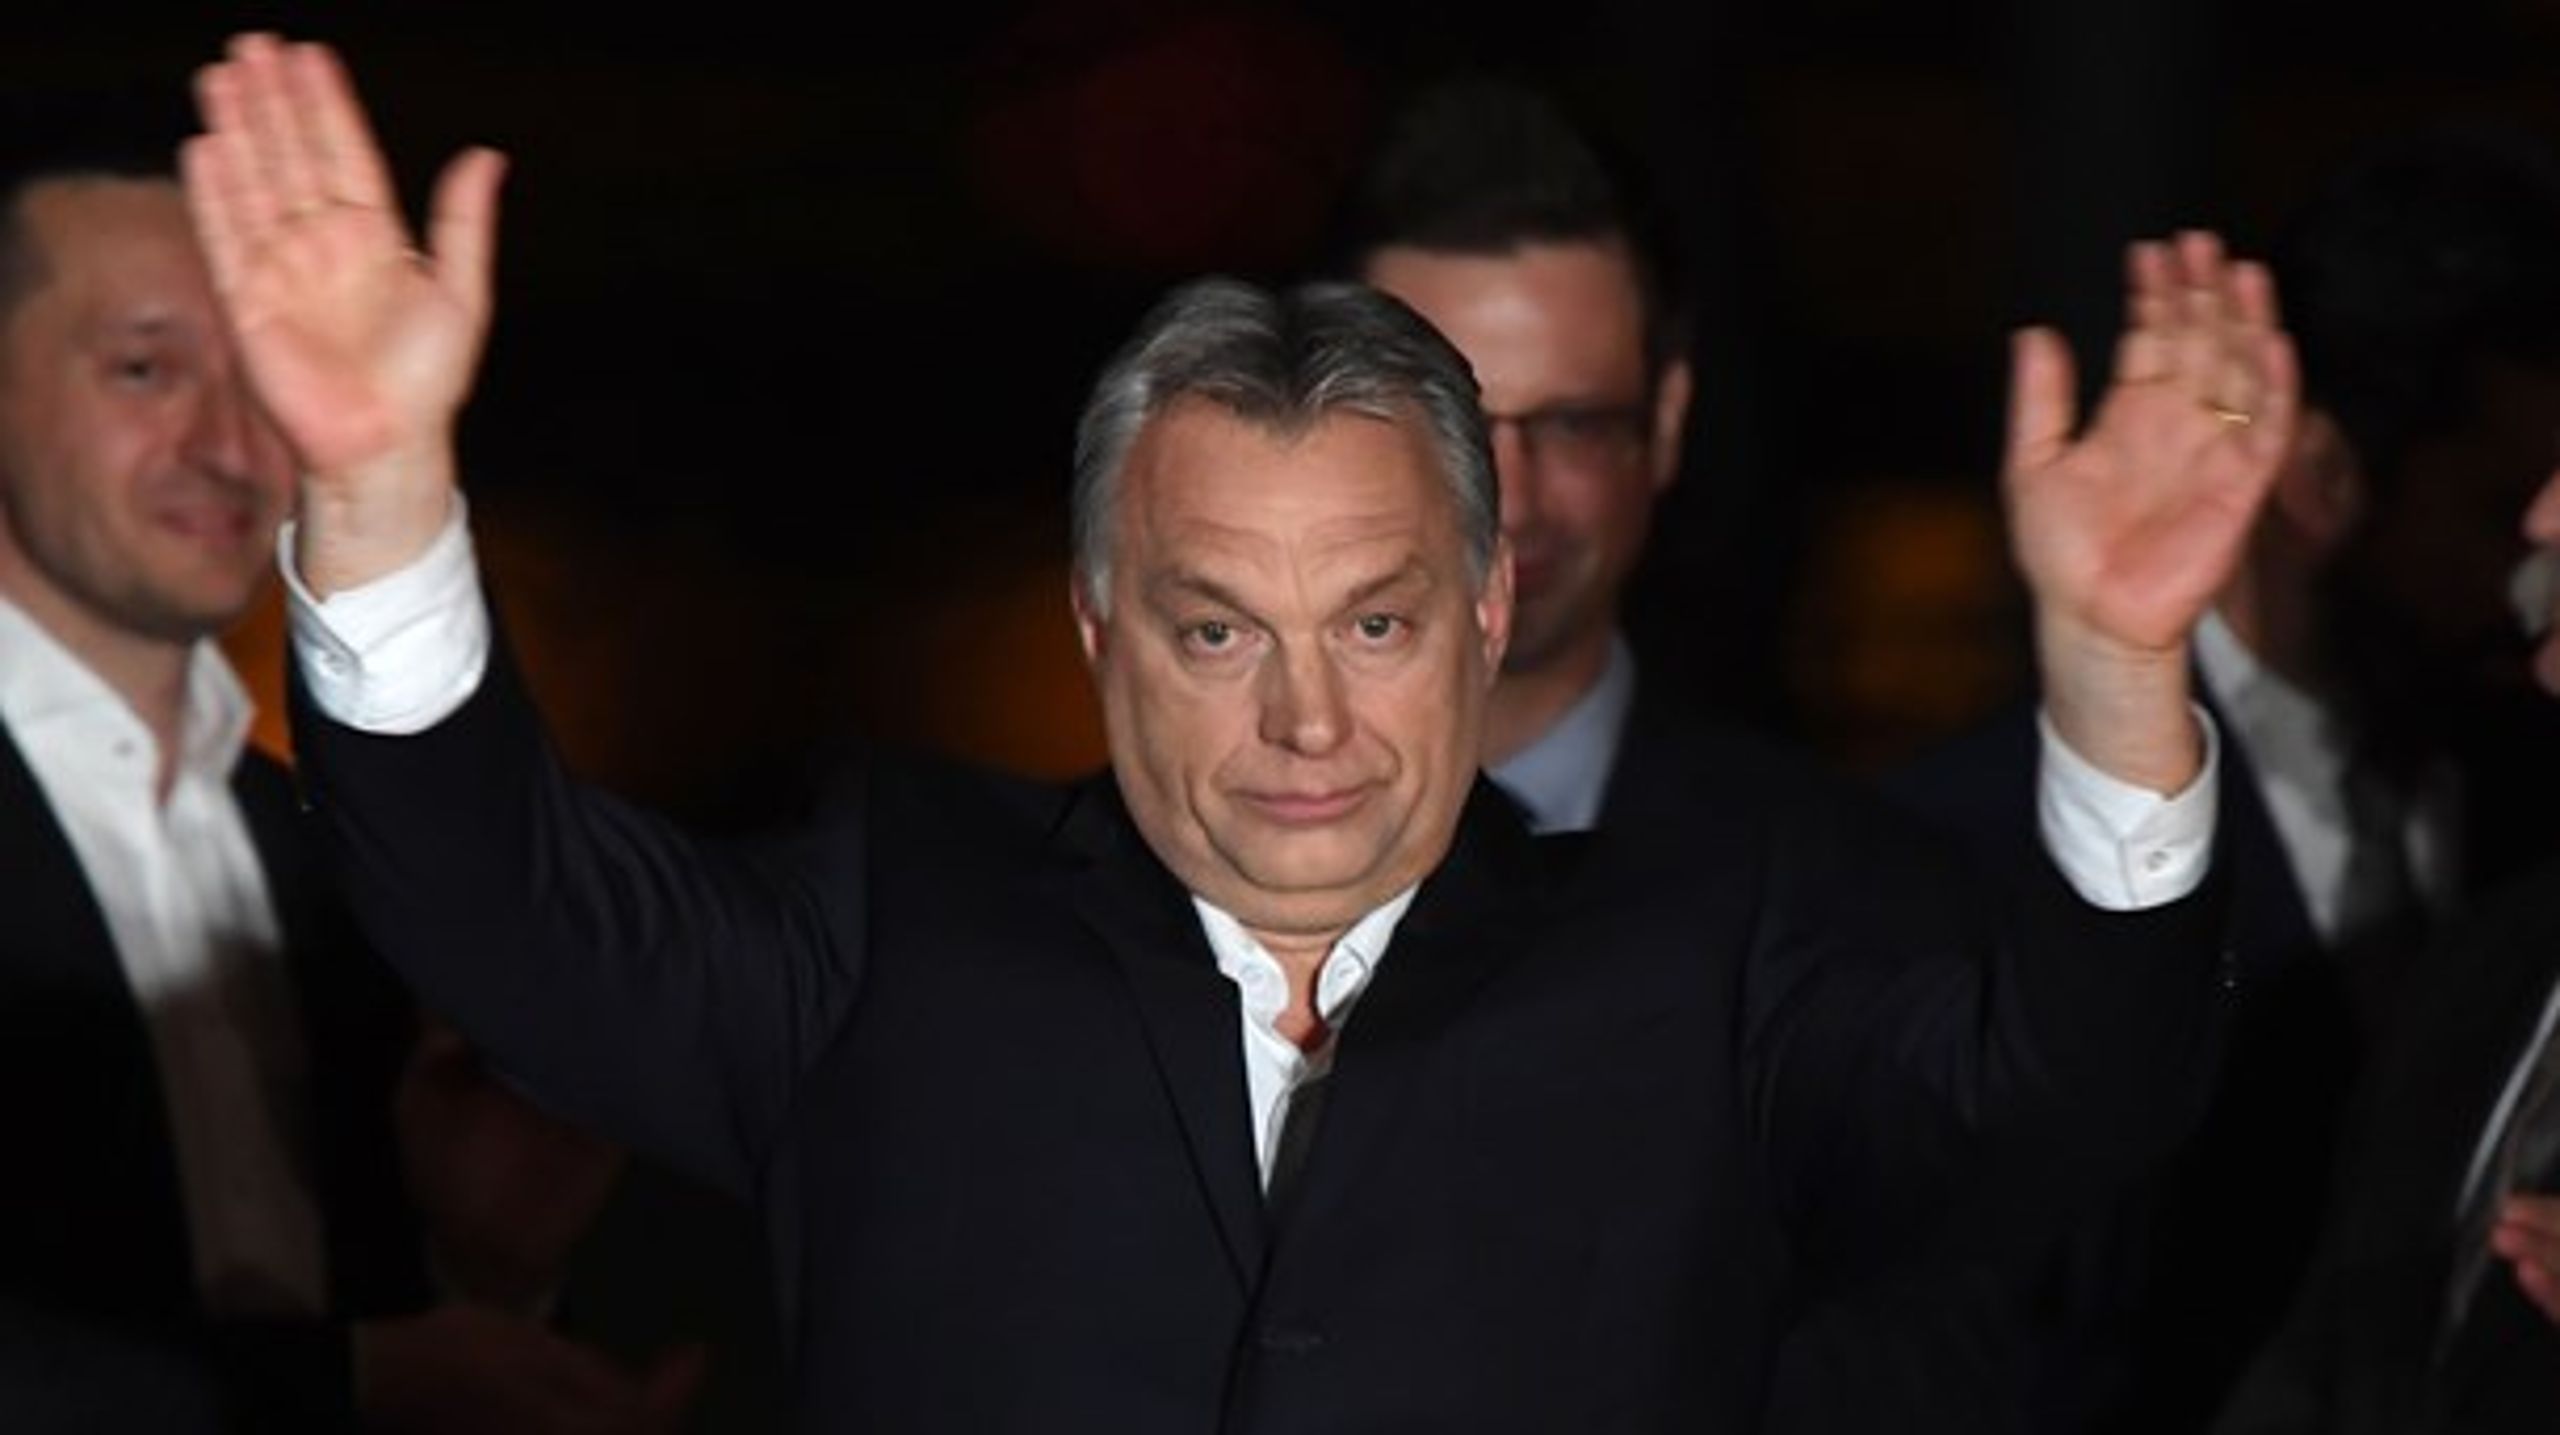 Viktor Orbáns regering spytter på EU, men nyder økonomisk godt af sit medlemskab. EU bør skrue bissen på, skriver Morten Helveg Petersen og Martin Lidegaard.